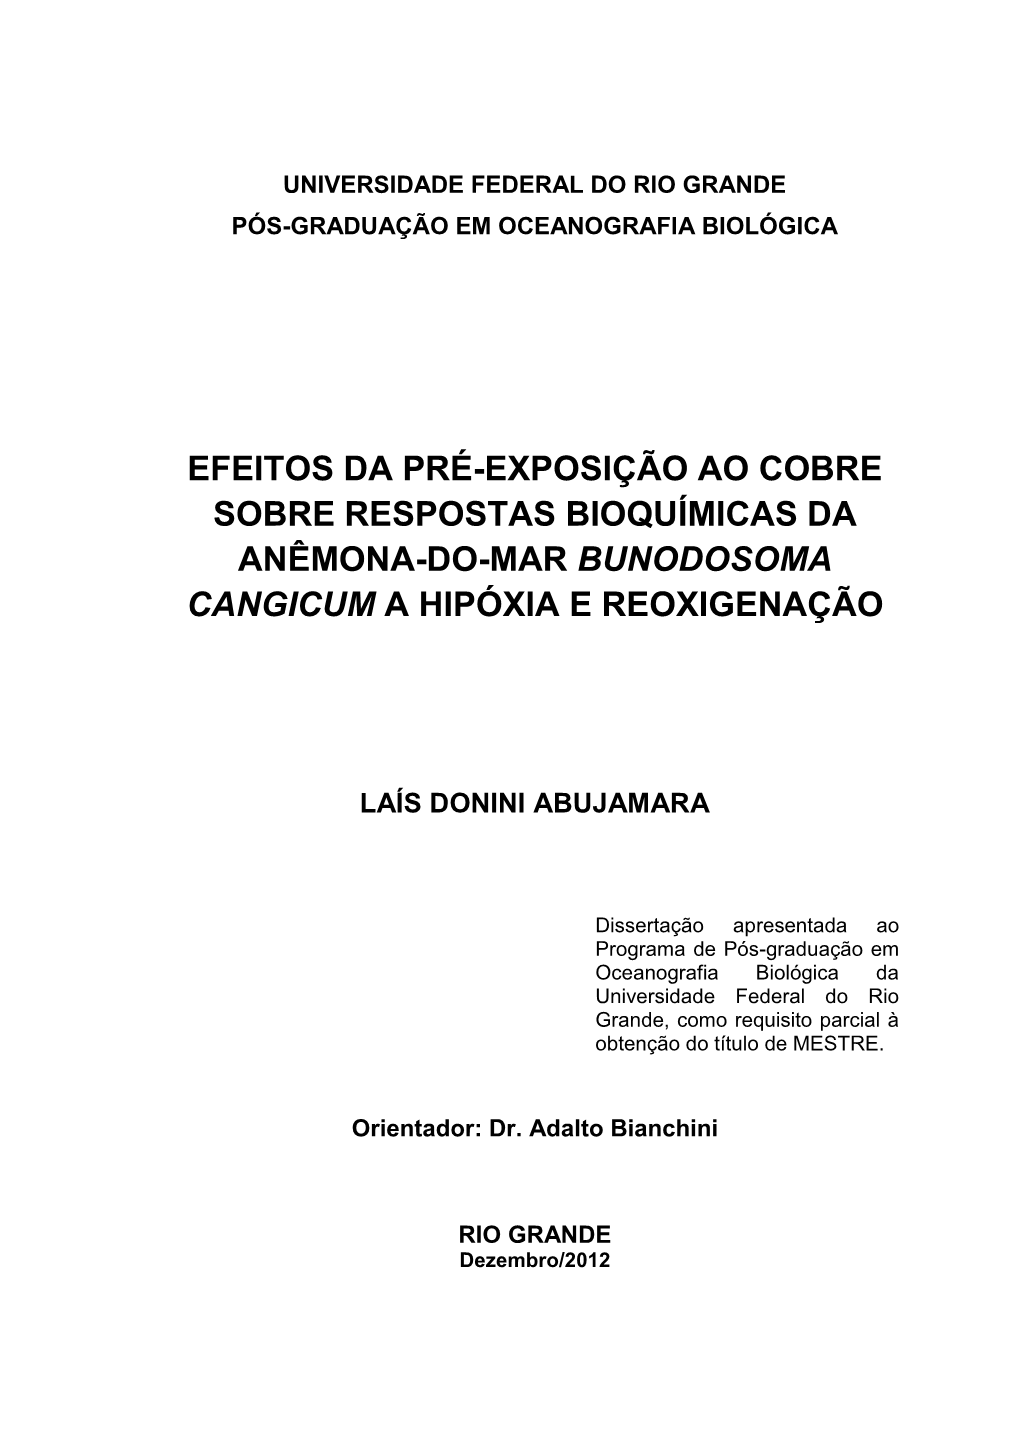 Efeitos Da Pré-Exposição Ao Cobre Sobre Respostas Bioquímicas Da Anêmona-Do-Mar Bunodosoma Cangicum a Hipóxia E Reoxigenação